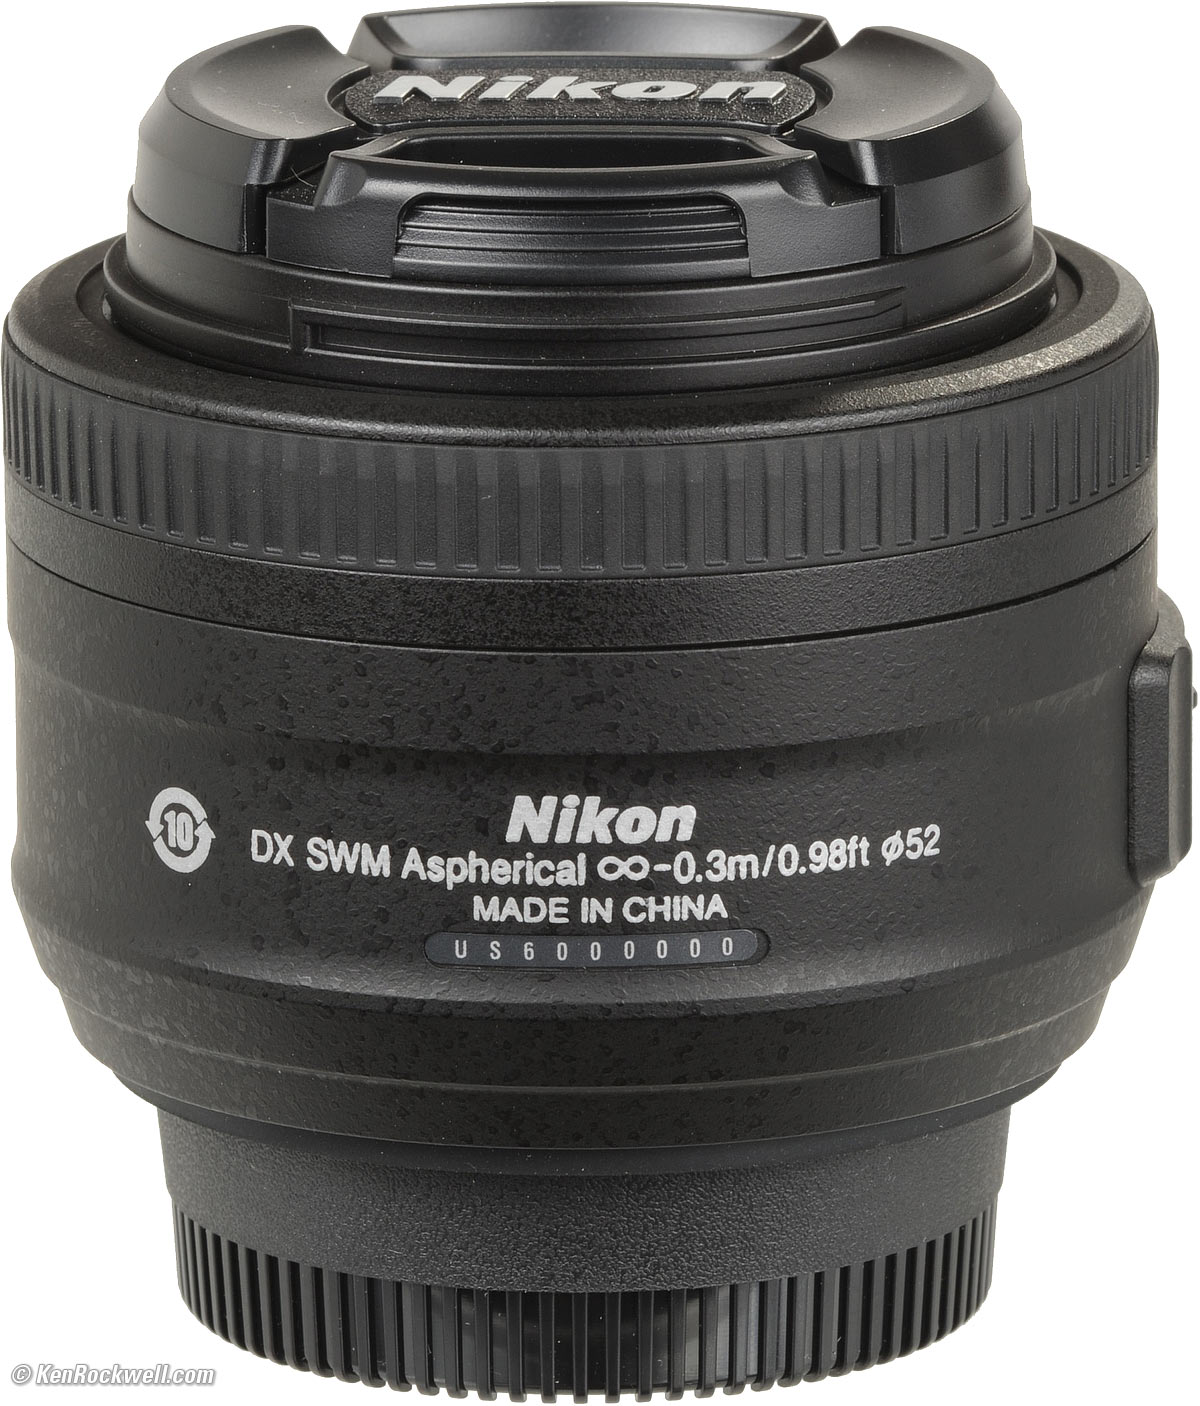 カメラ レンズ(単焦点) Nikon 35mm f/1.8 DX